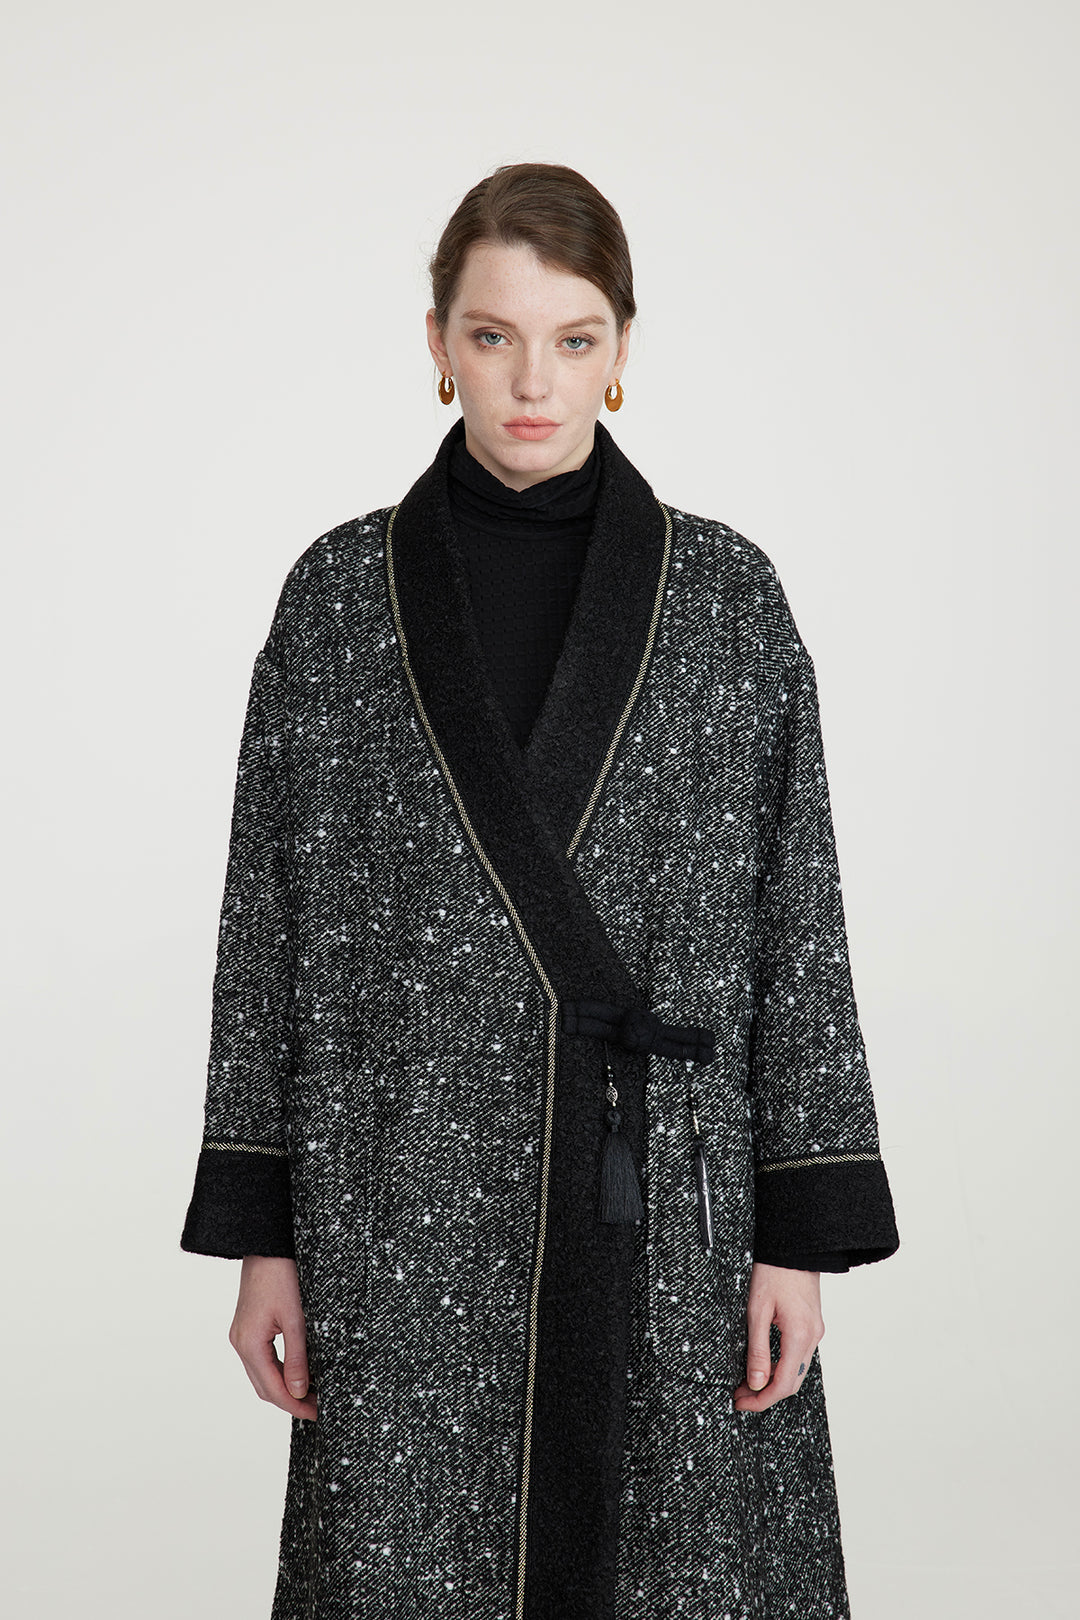 Manteau cardigan élégant en laine au design rétro